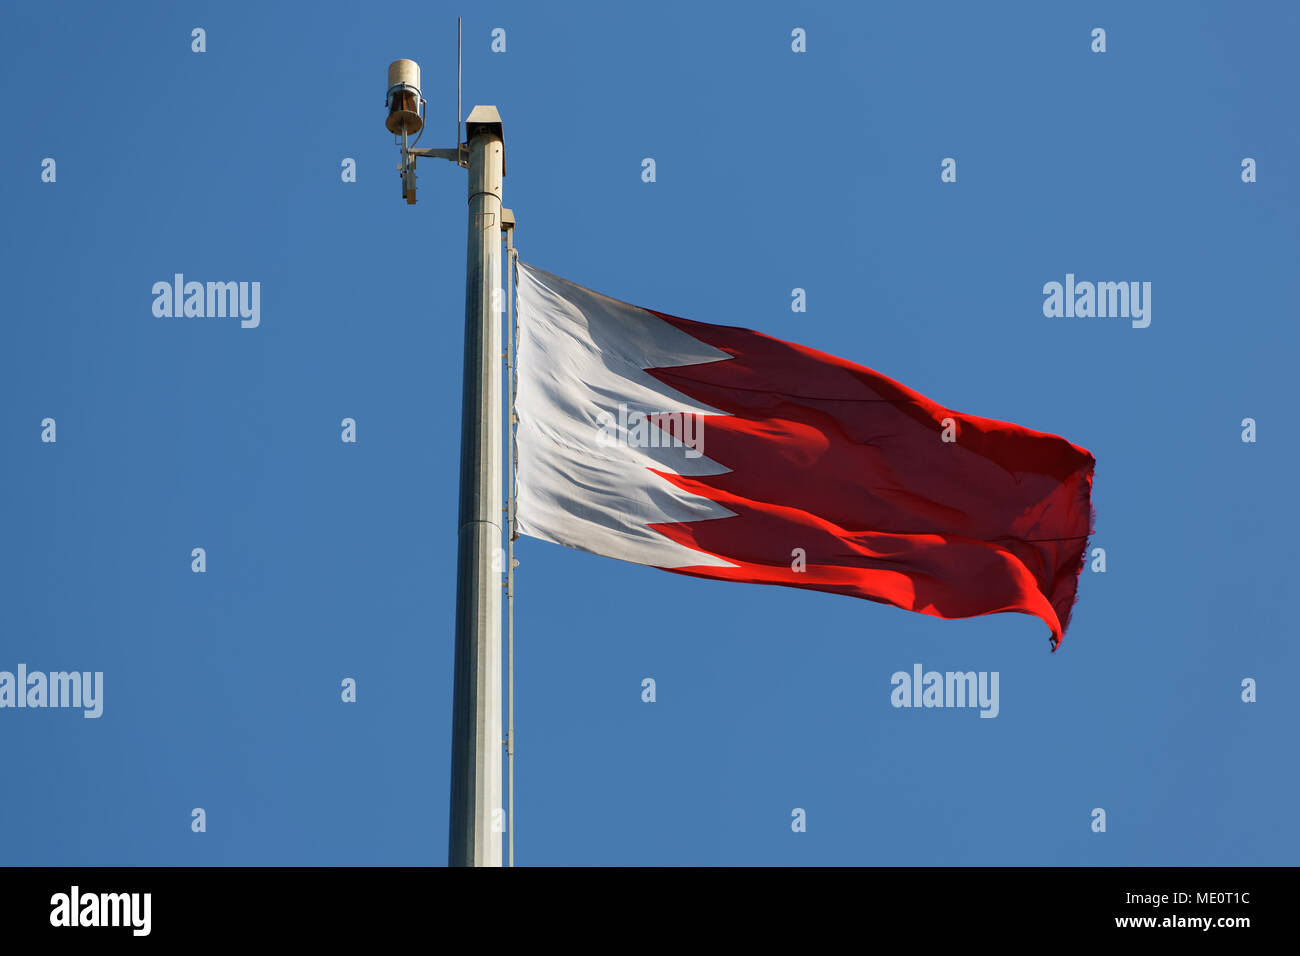 Kingdom of Bahrain. Königreich Bahrain. Mamlakat al-Bahrain.  Bahrain. Stock Photo